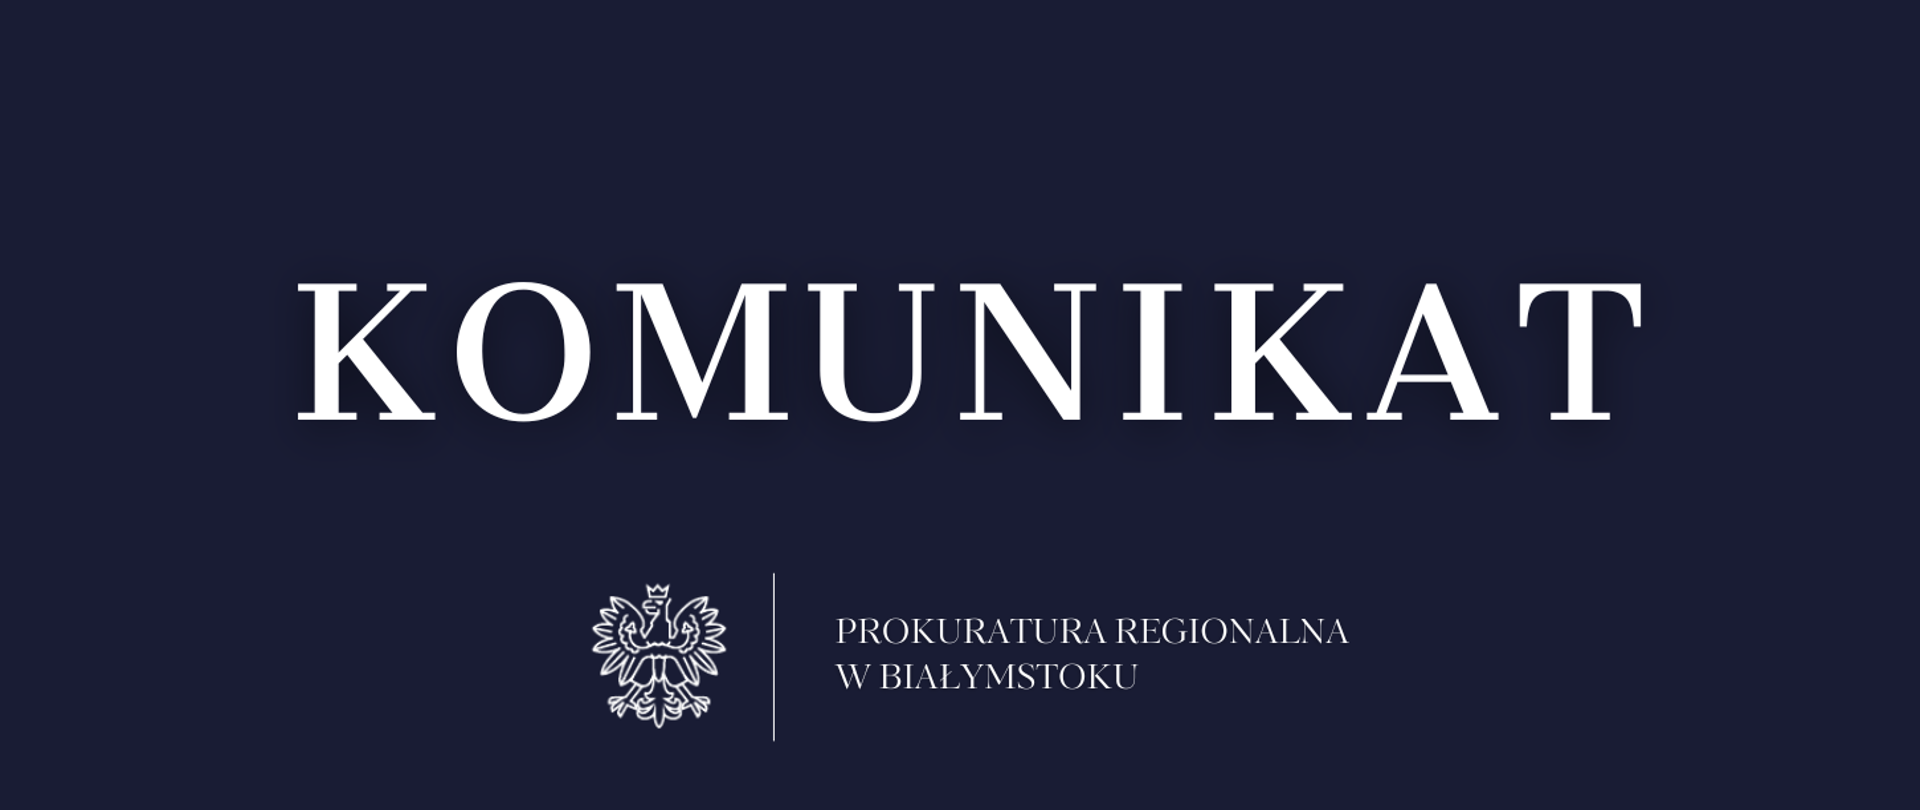 Na granatowym tle biały napis komunikat, białe godło oraz nazwa jednostki organizacyjnej Prokuratura Regionalna w Białymstoku